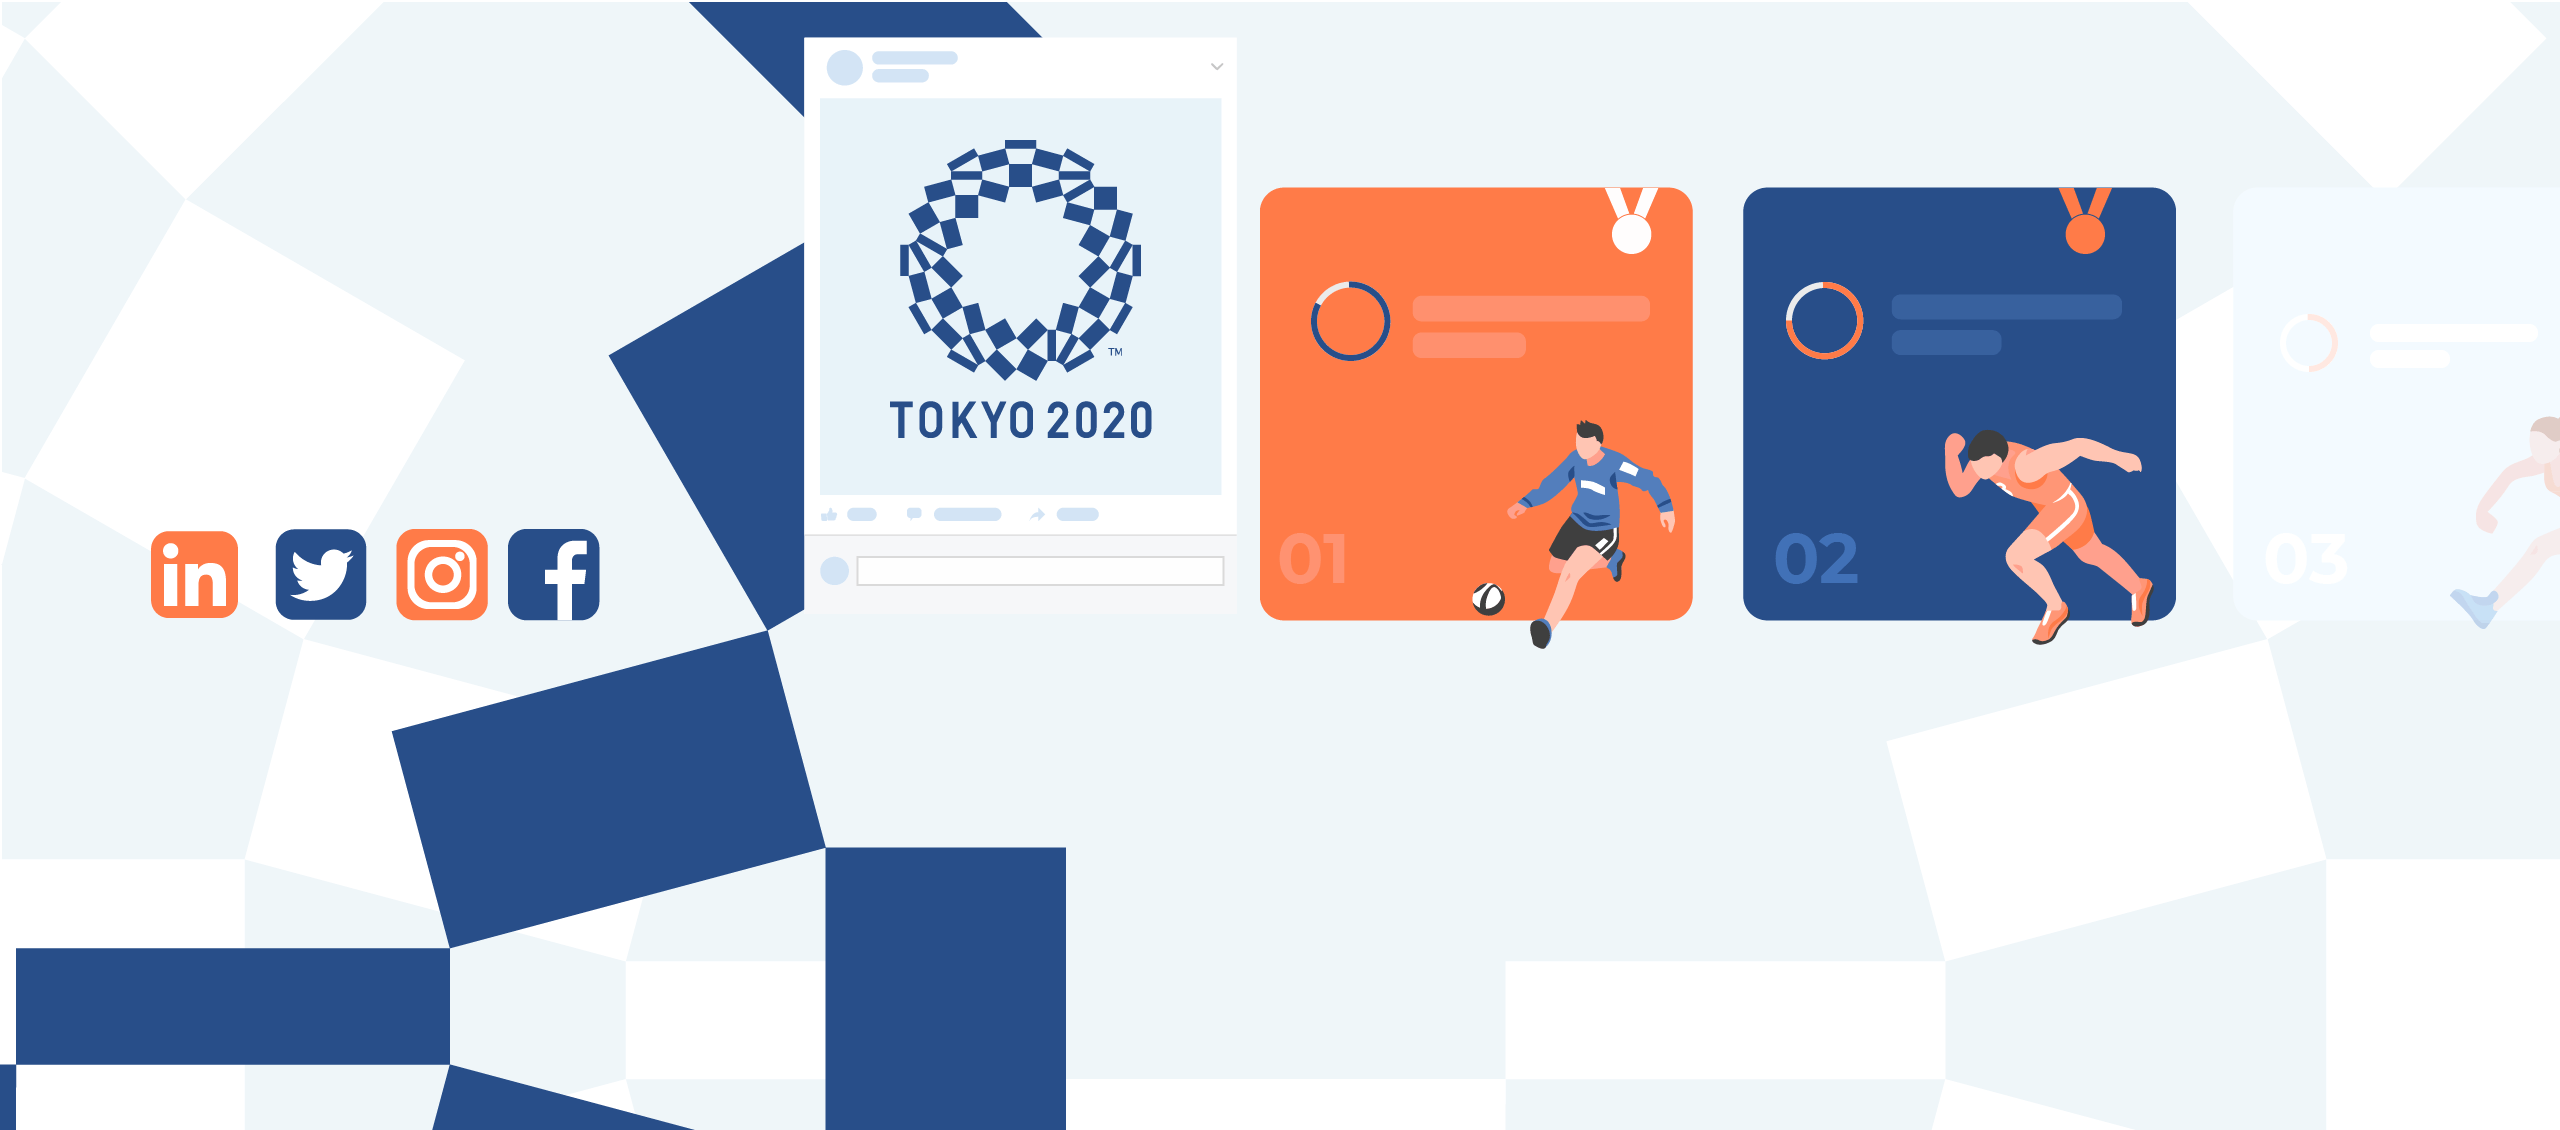 Tokyo Olympics 2021